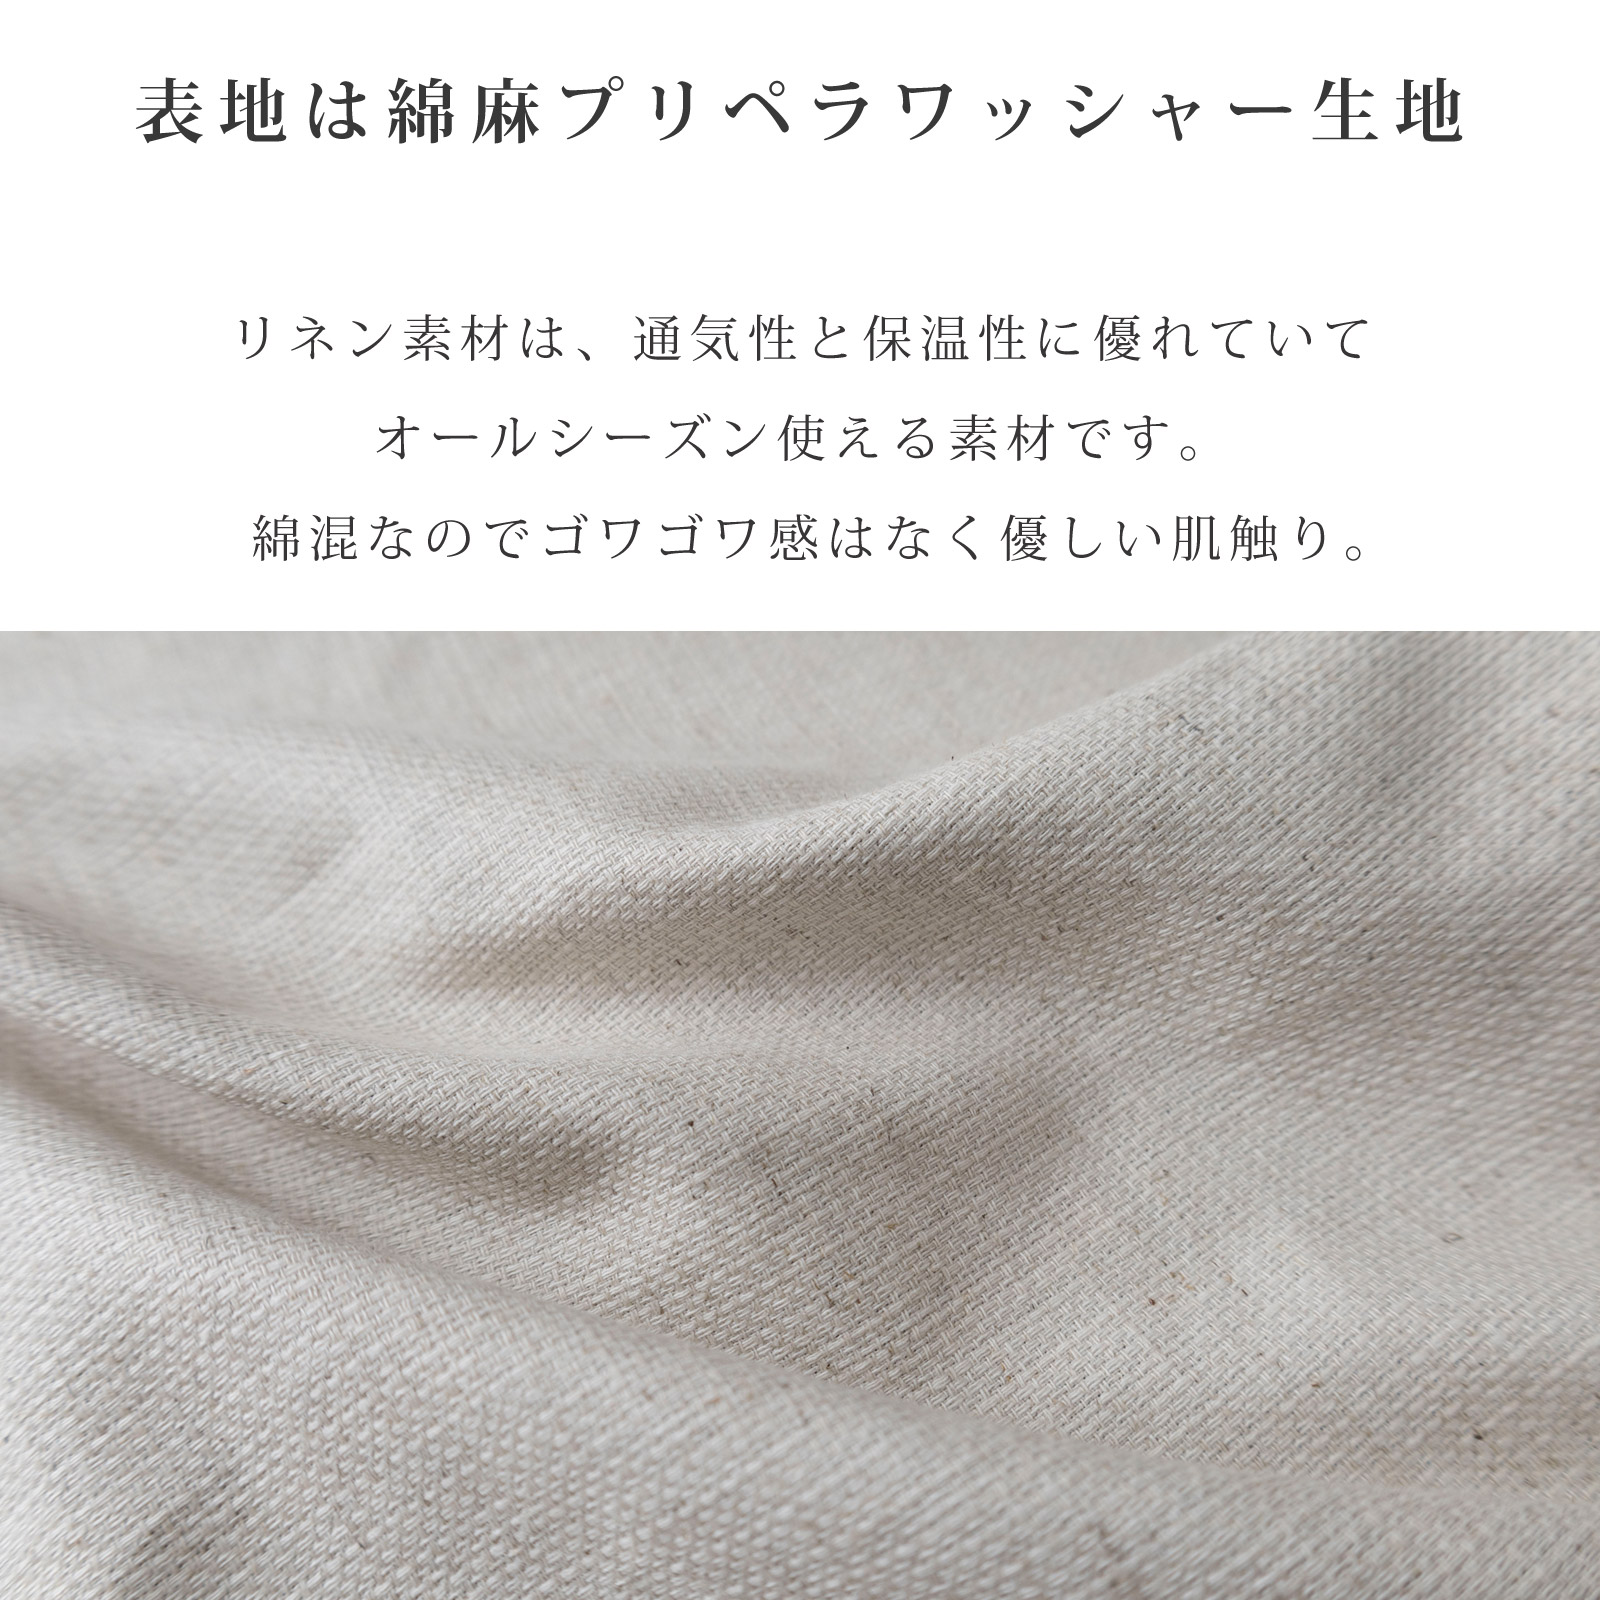 日本製 キャリー用カバー クレートカバー オールシーズン 綿麻